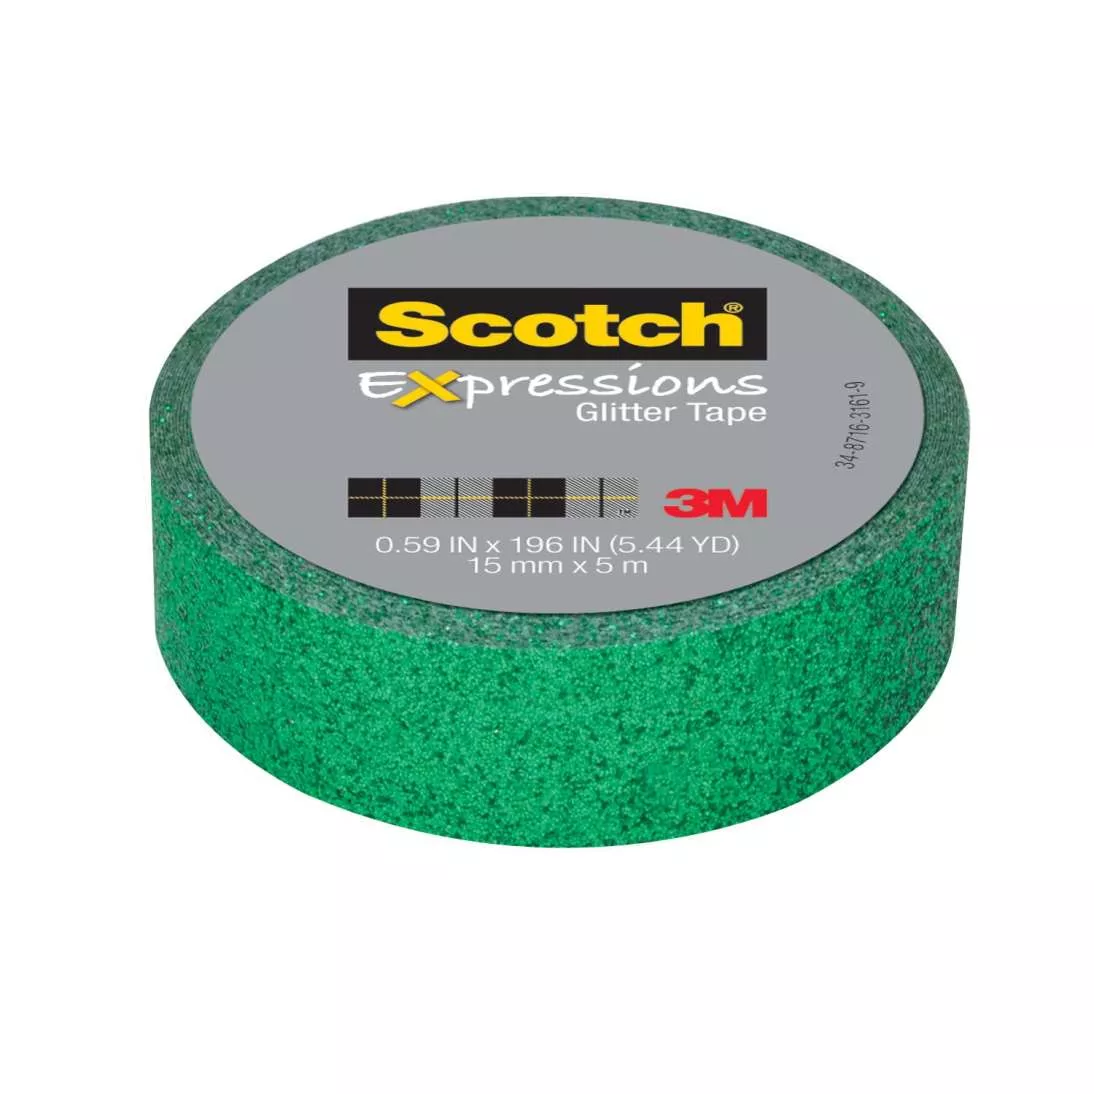 Scotch® Expressions Glitter Tape C514-GRN2, .59 in x 196 in (15 mm x 5
m) Dark Green Glitter